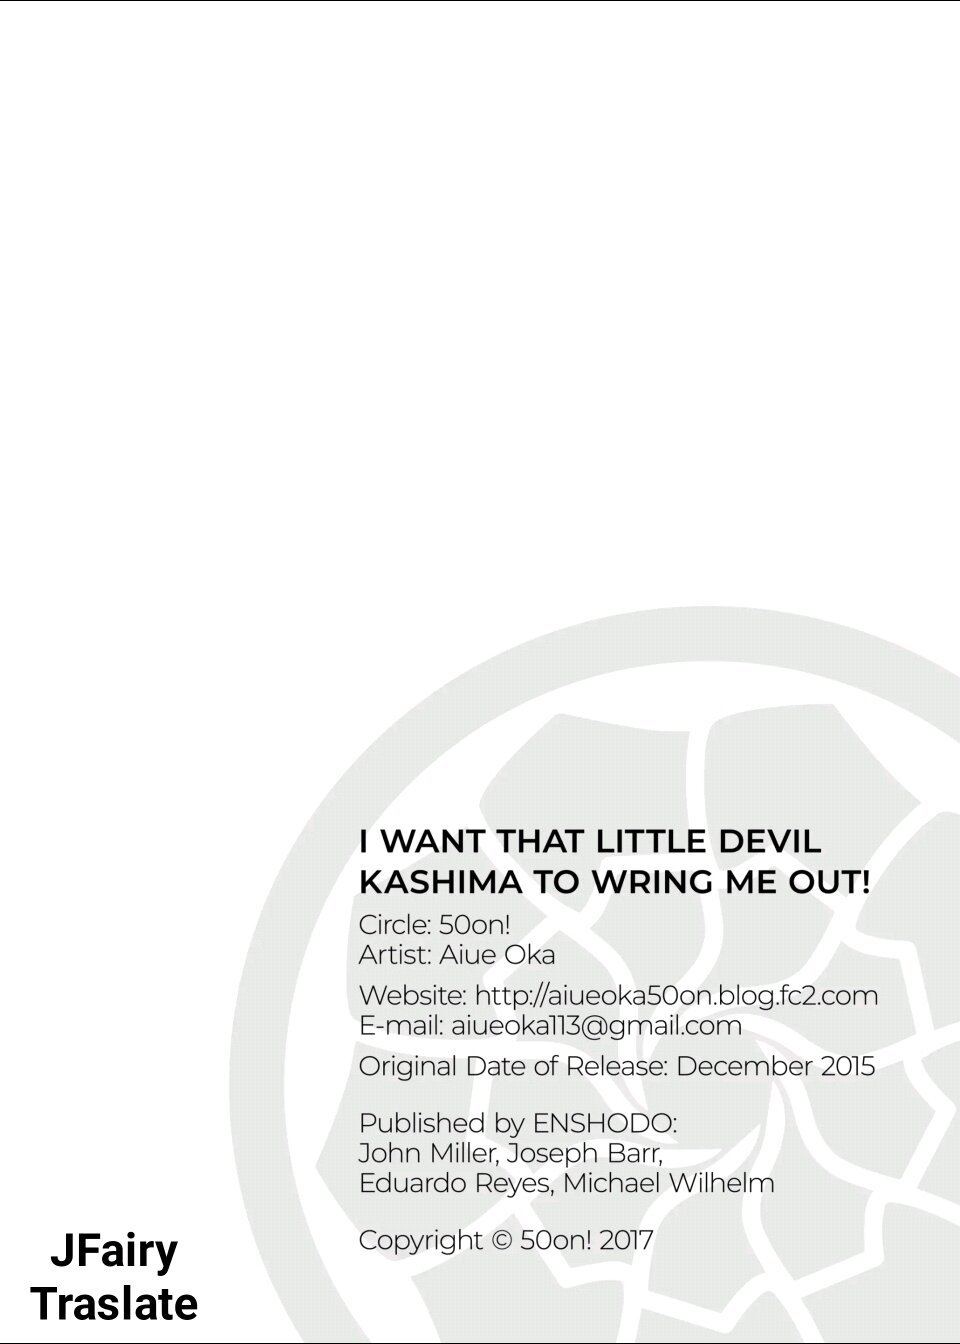 Quiero que esa pequeña diabla Kashima me exprima! (Sin censura) - 17